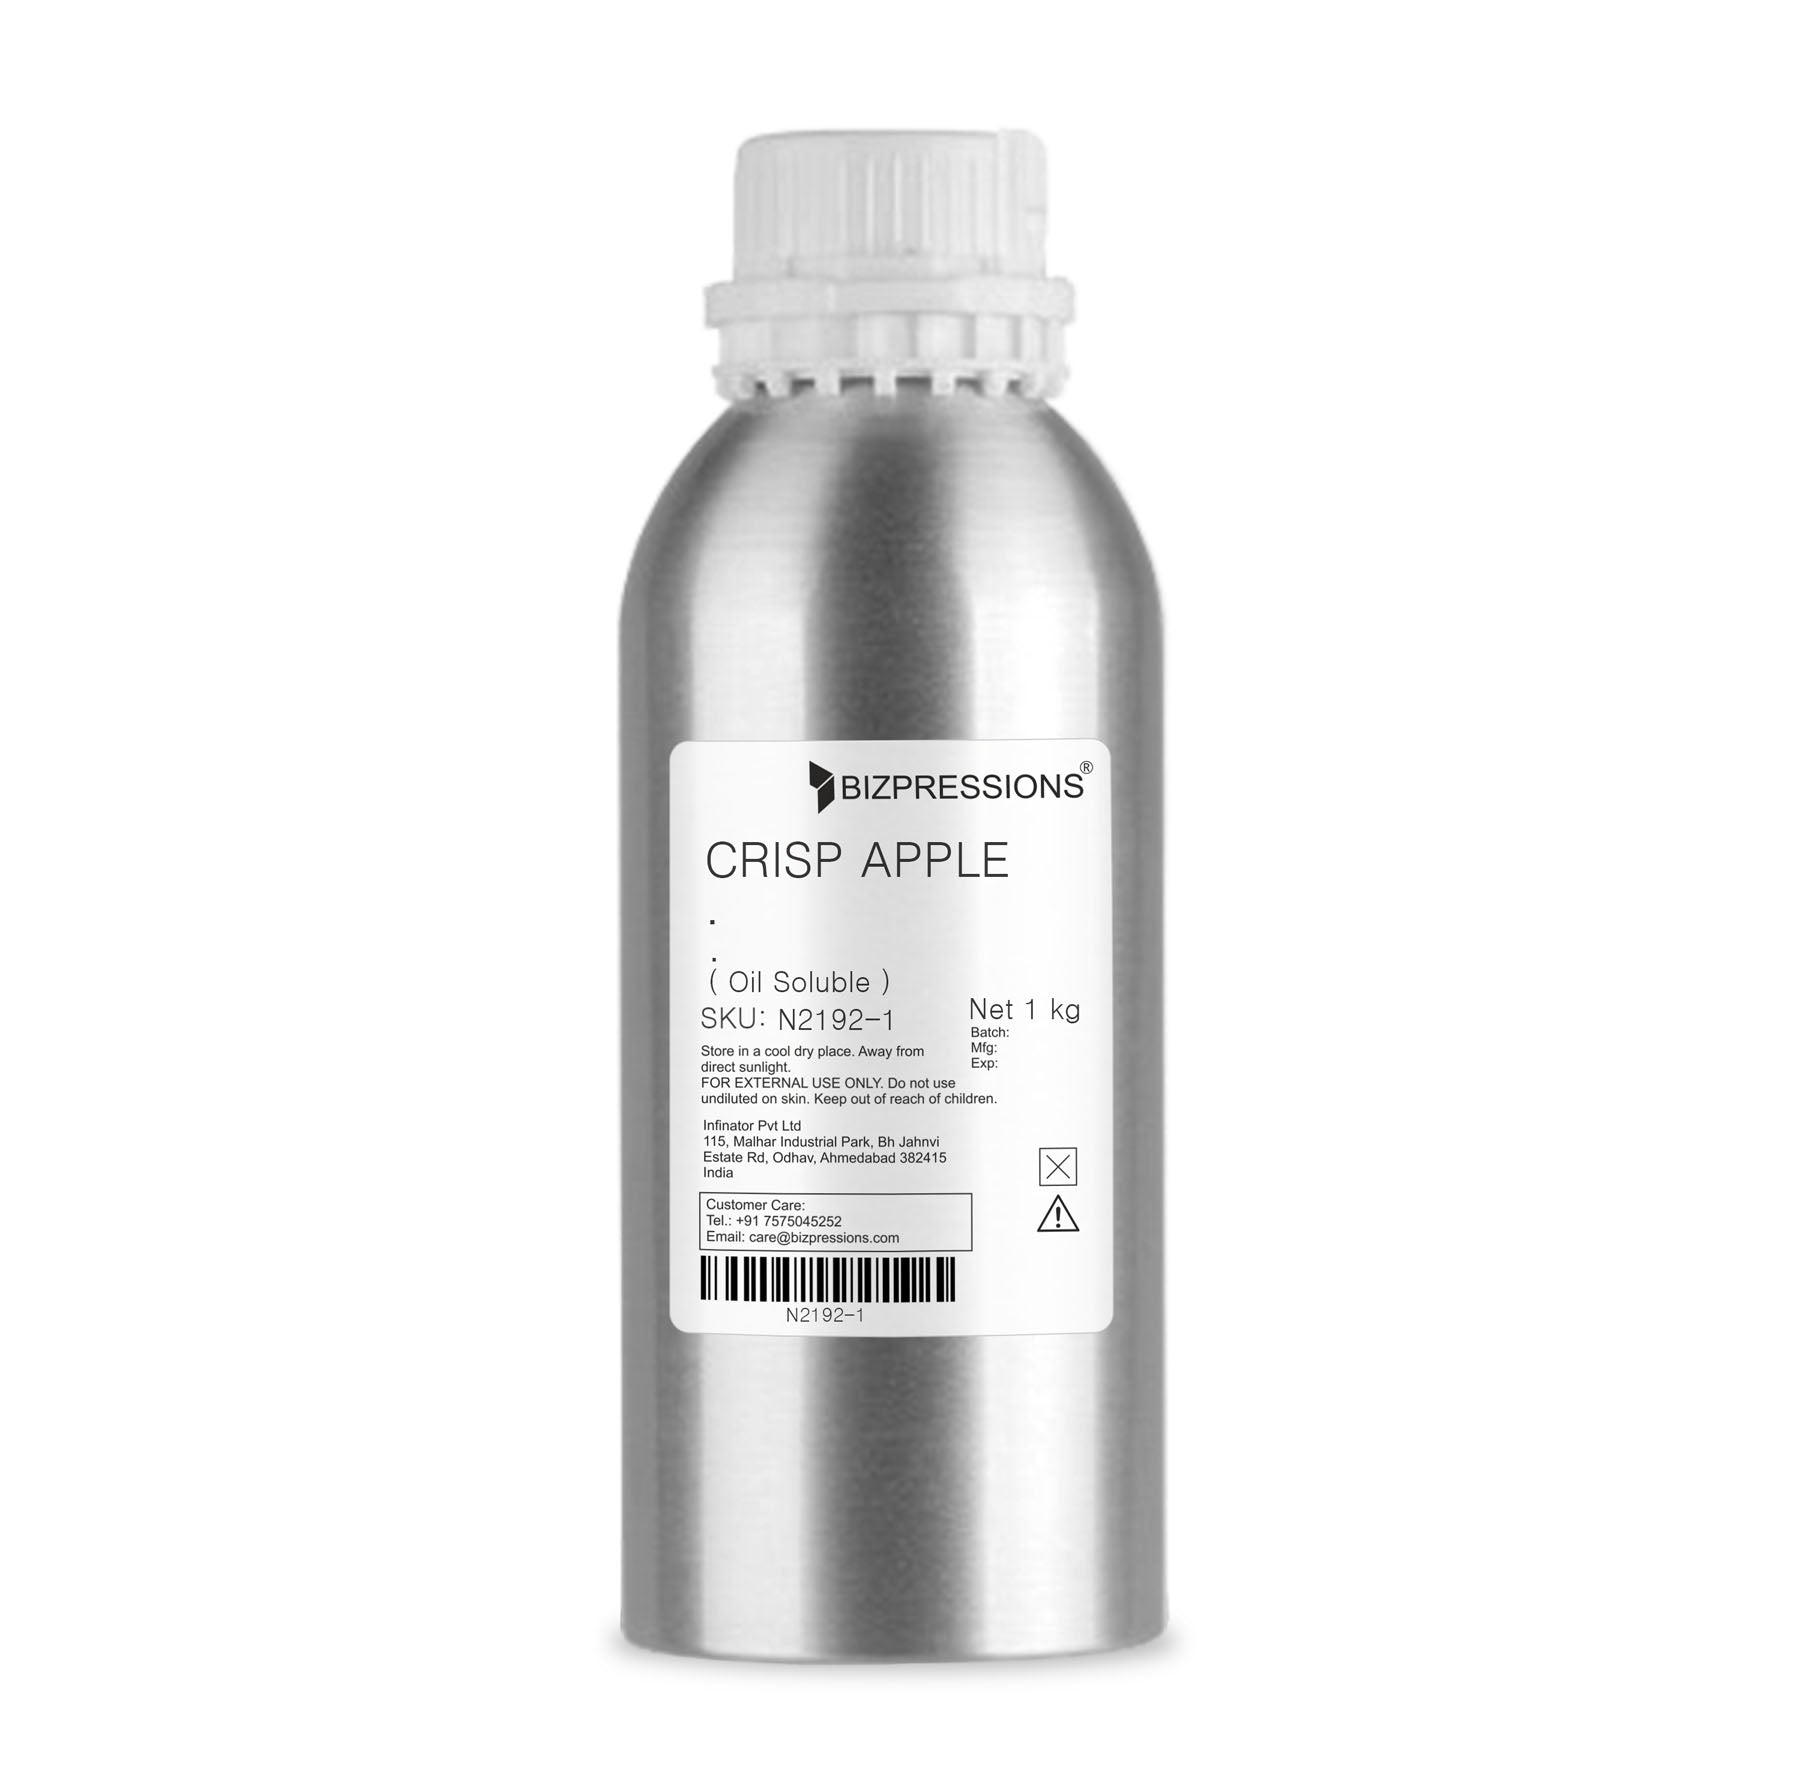 CRISP APPLE - Fragrance ( Oil Soluble ) - 1 kg